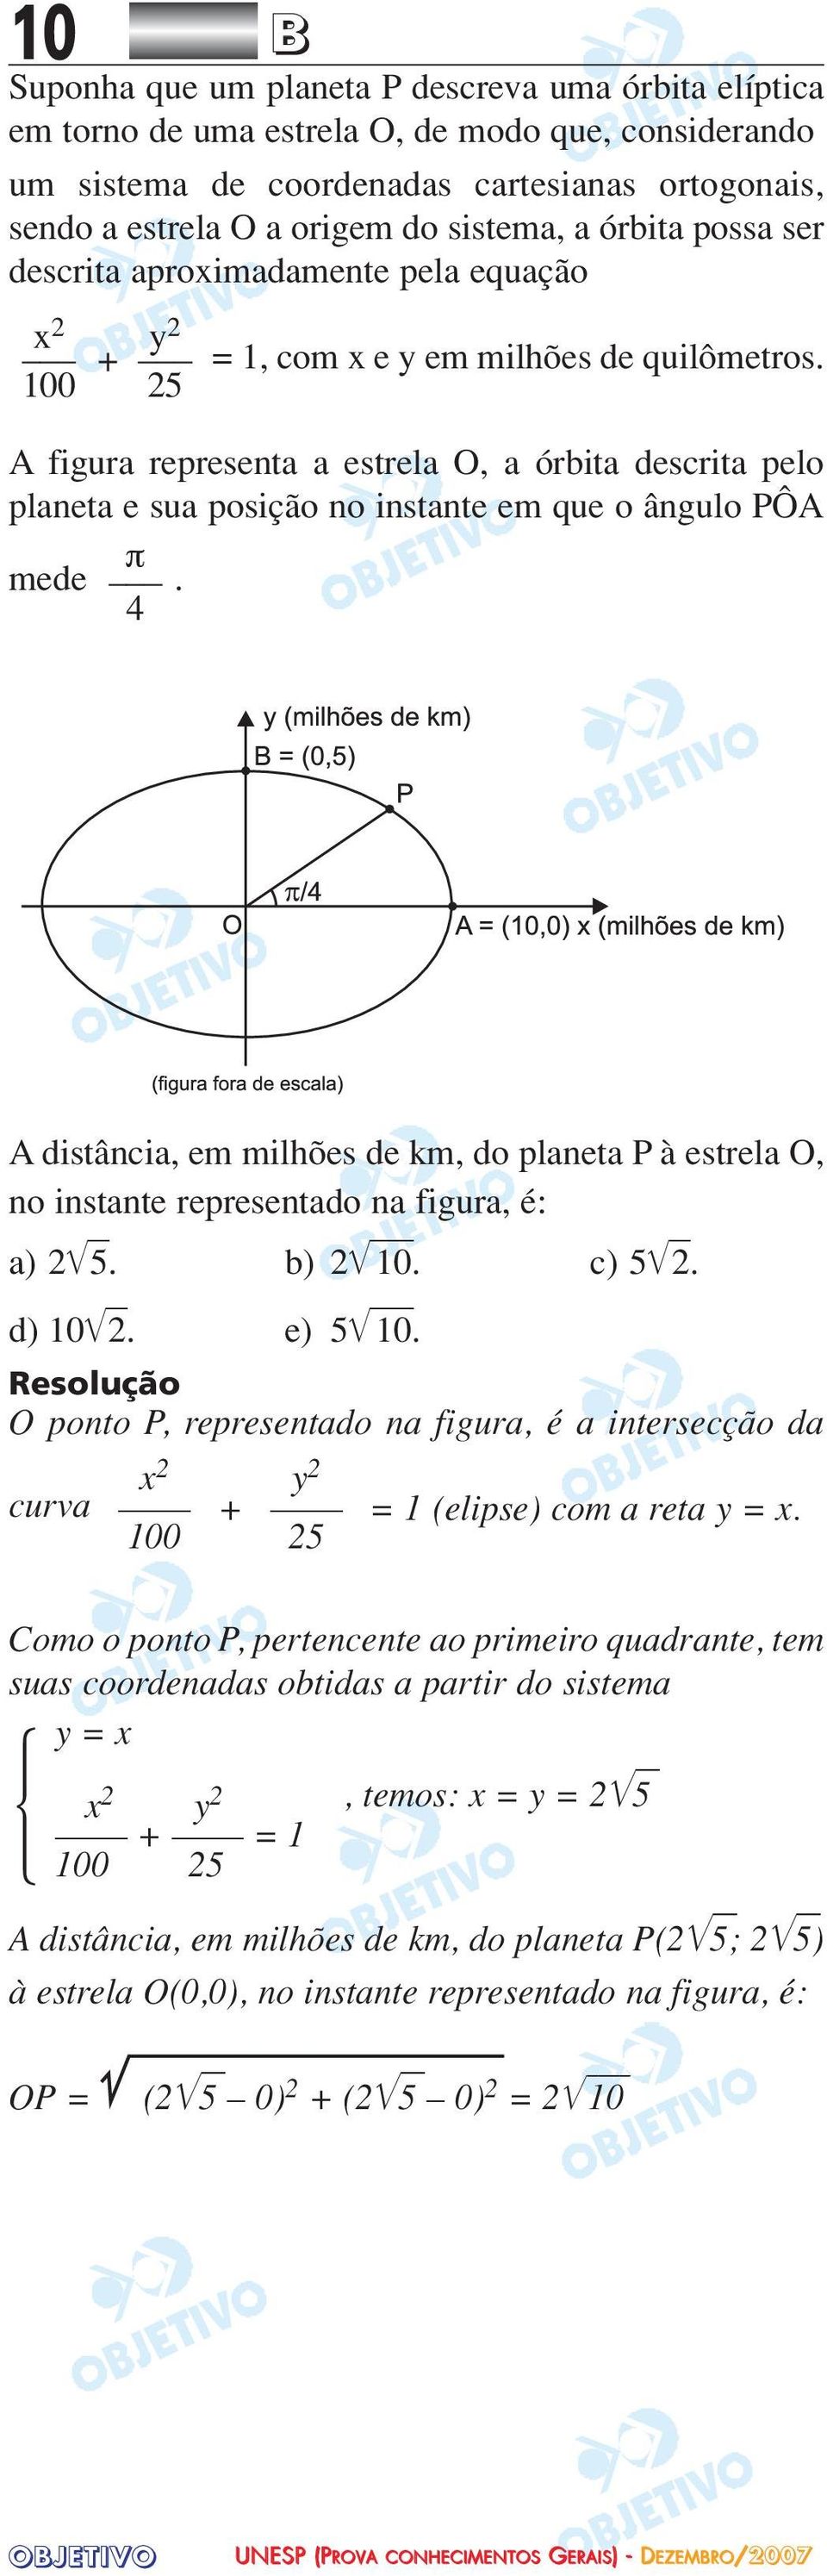 25 A figura representa a estrela O, a órbita descrita pelo planeta e sua posição no instante em que o ângulo PÔA π mede.